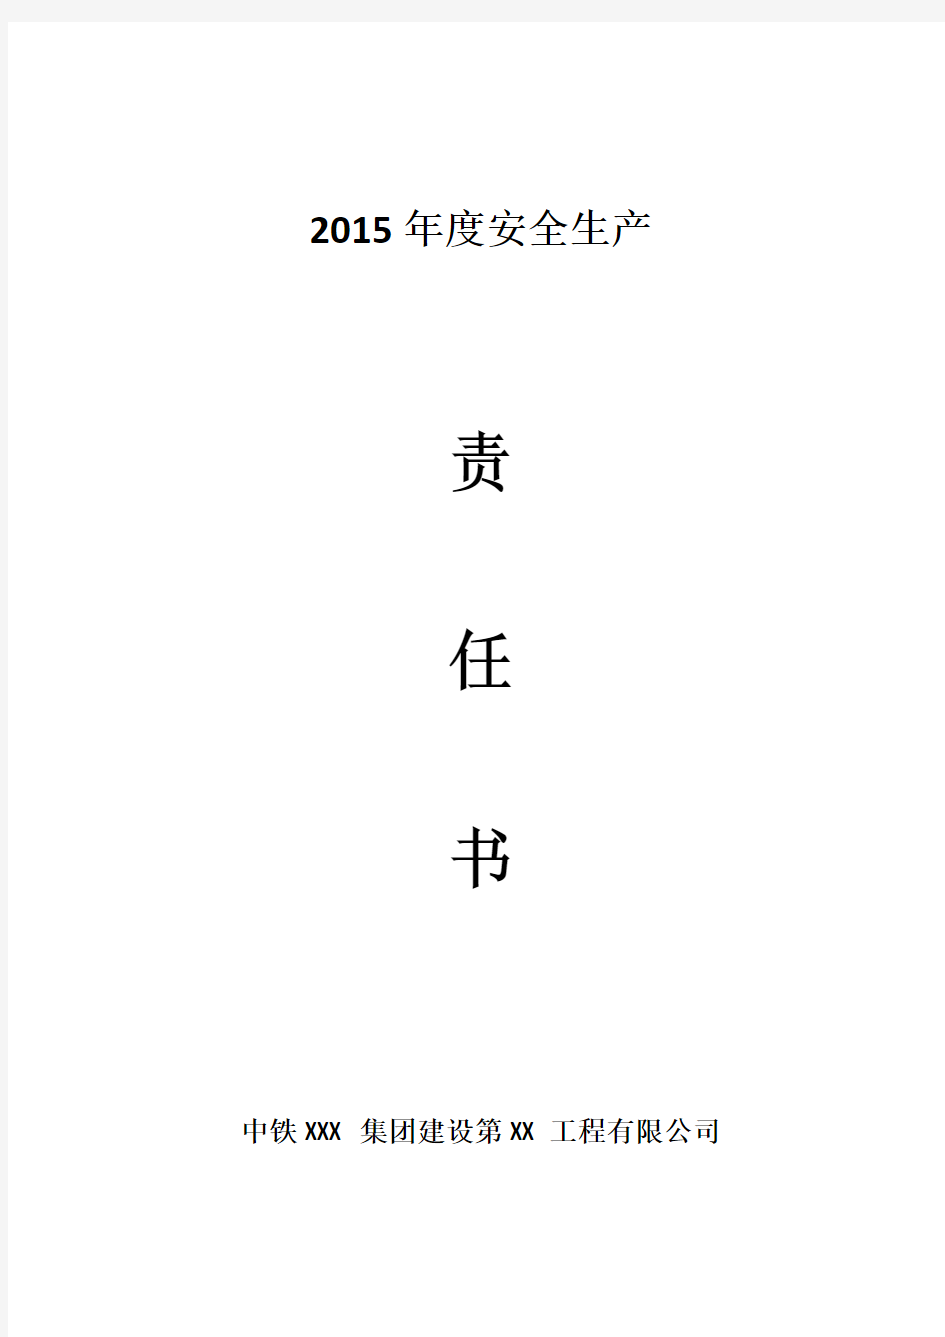 2015年度安全生产责任书